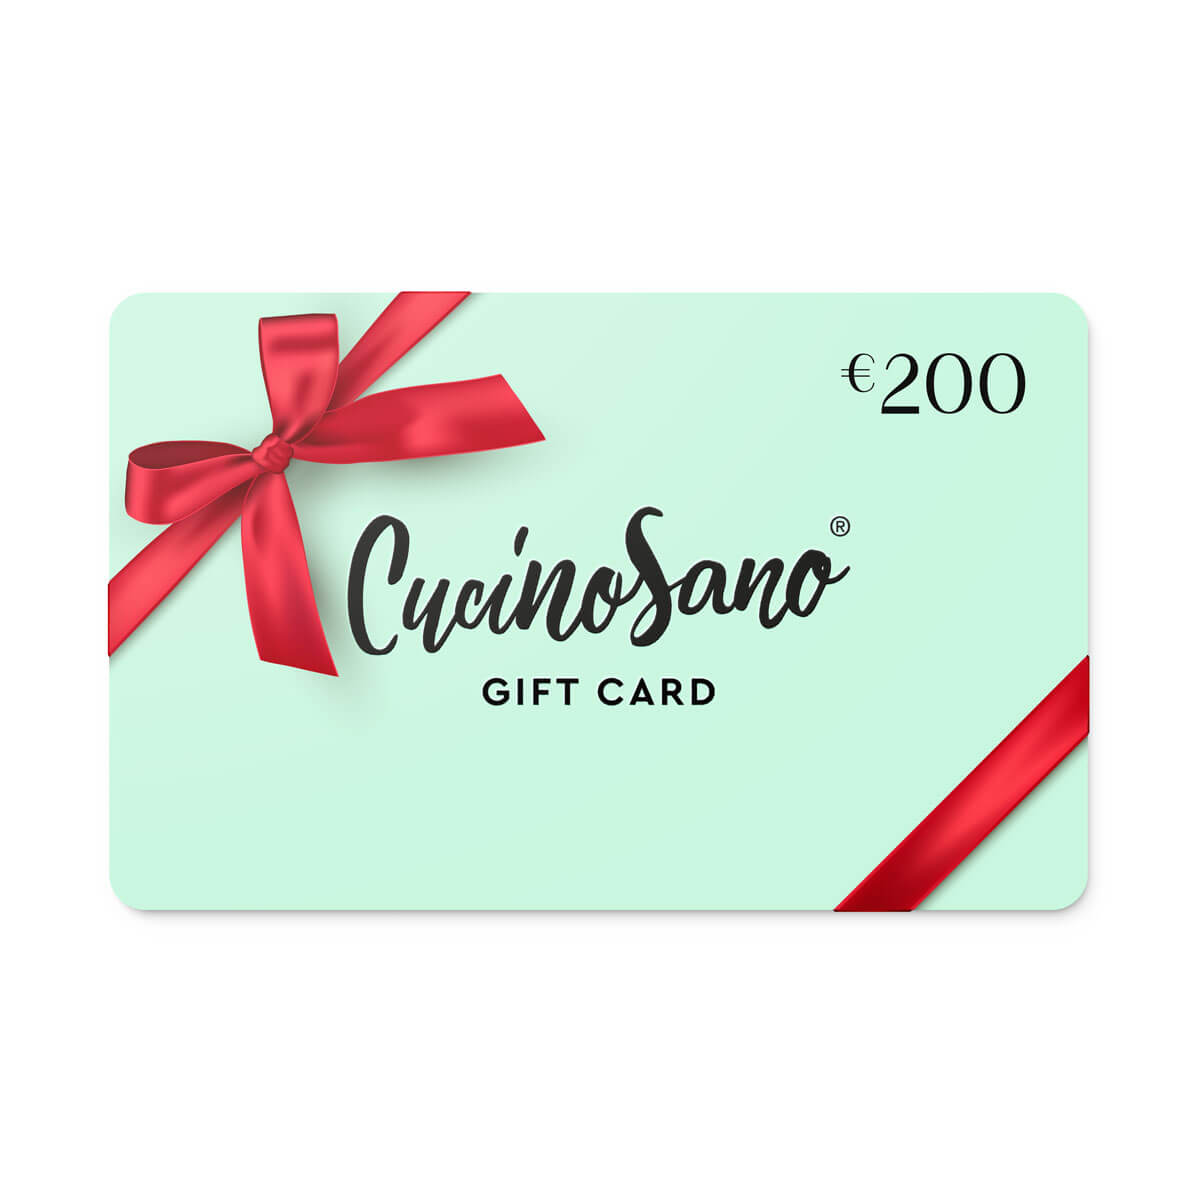 Gift Card Cucinosano